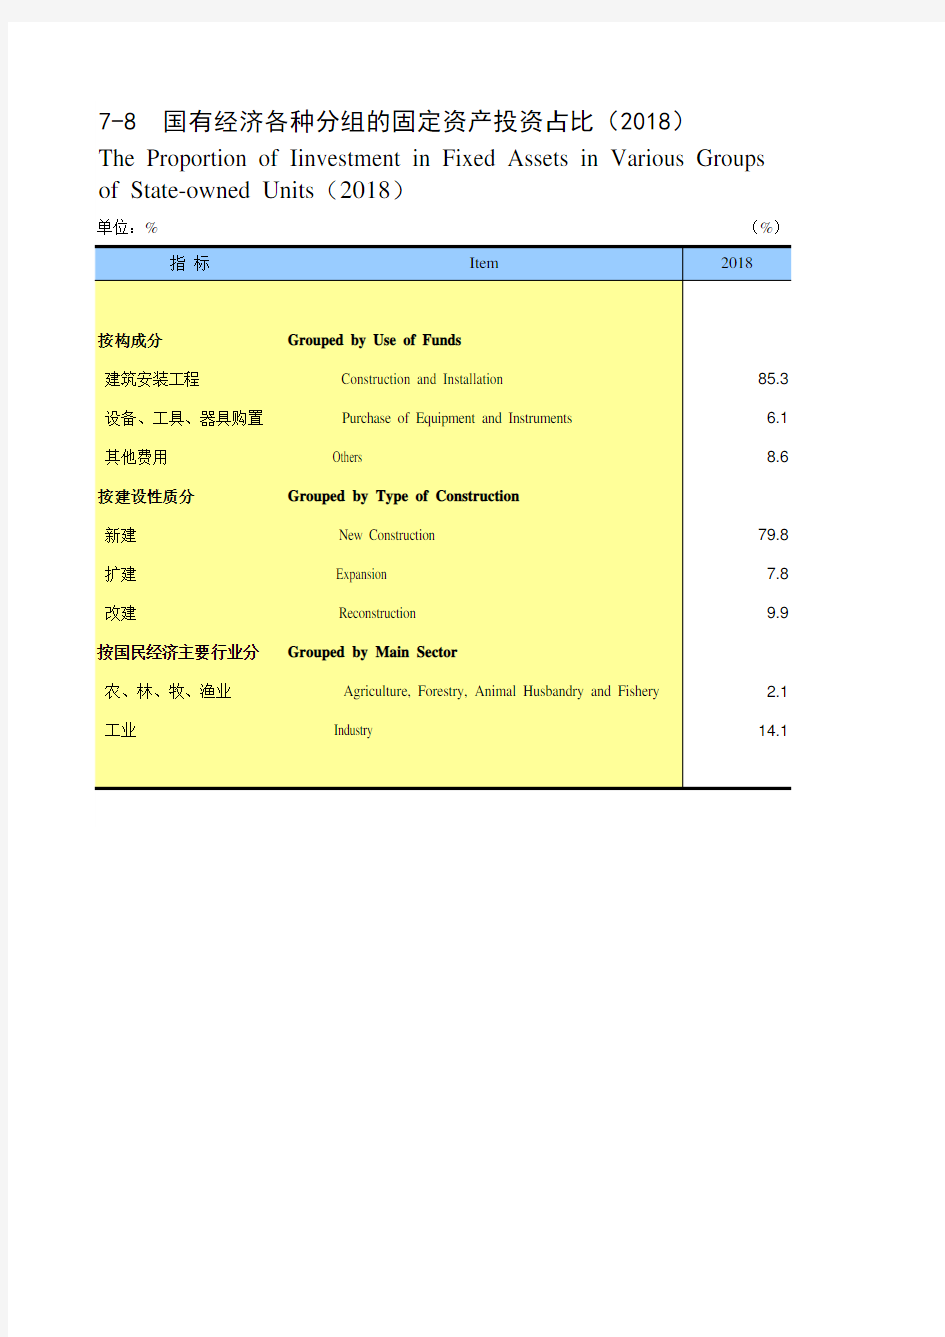 湖南省社会经济发展统计年鉴数据：7-8 国有经济各种分组的固定资产投资占比(2018)